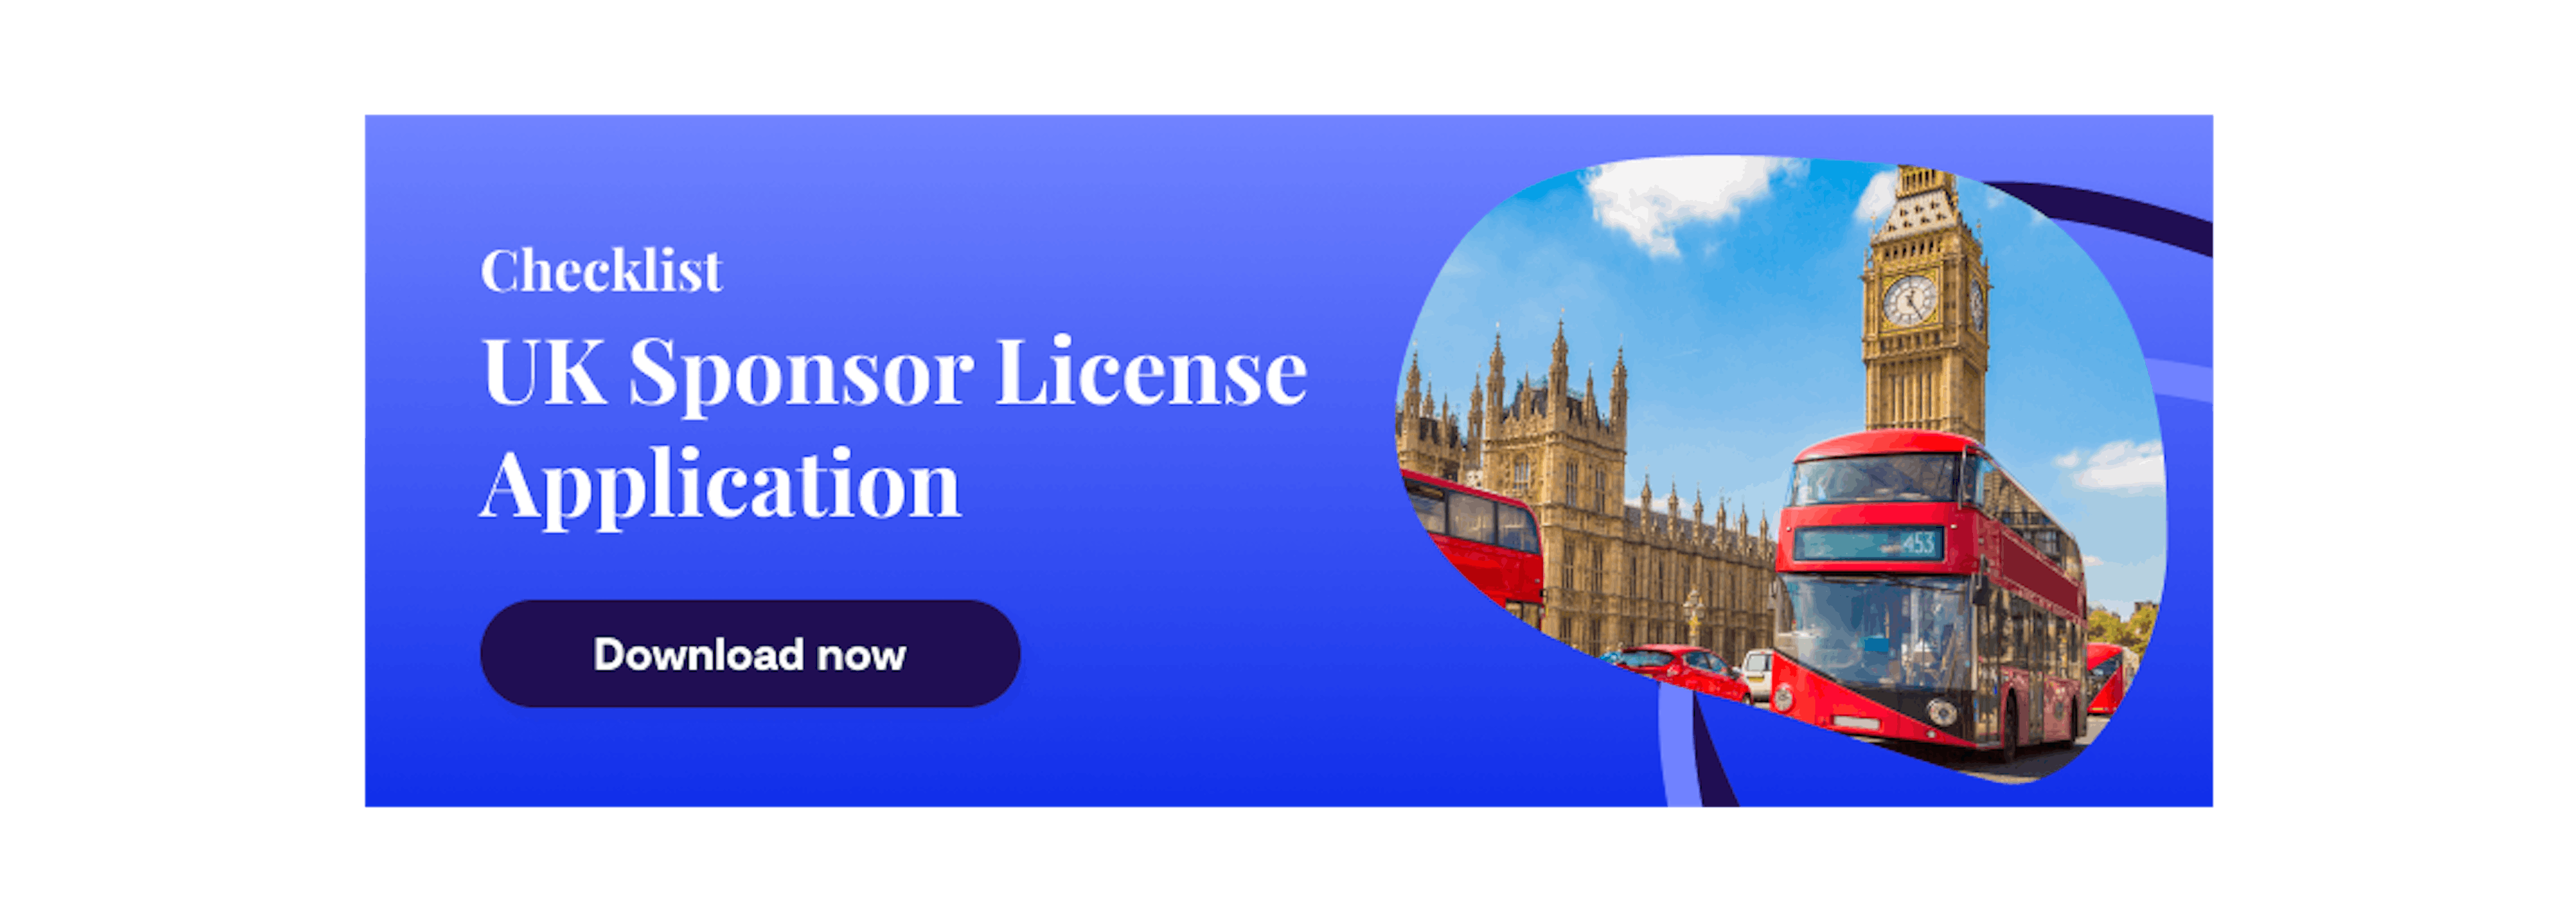 UK Sponsor licence application checklist